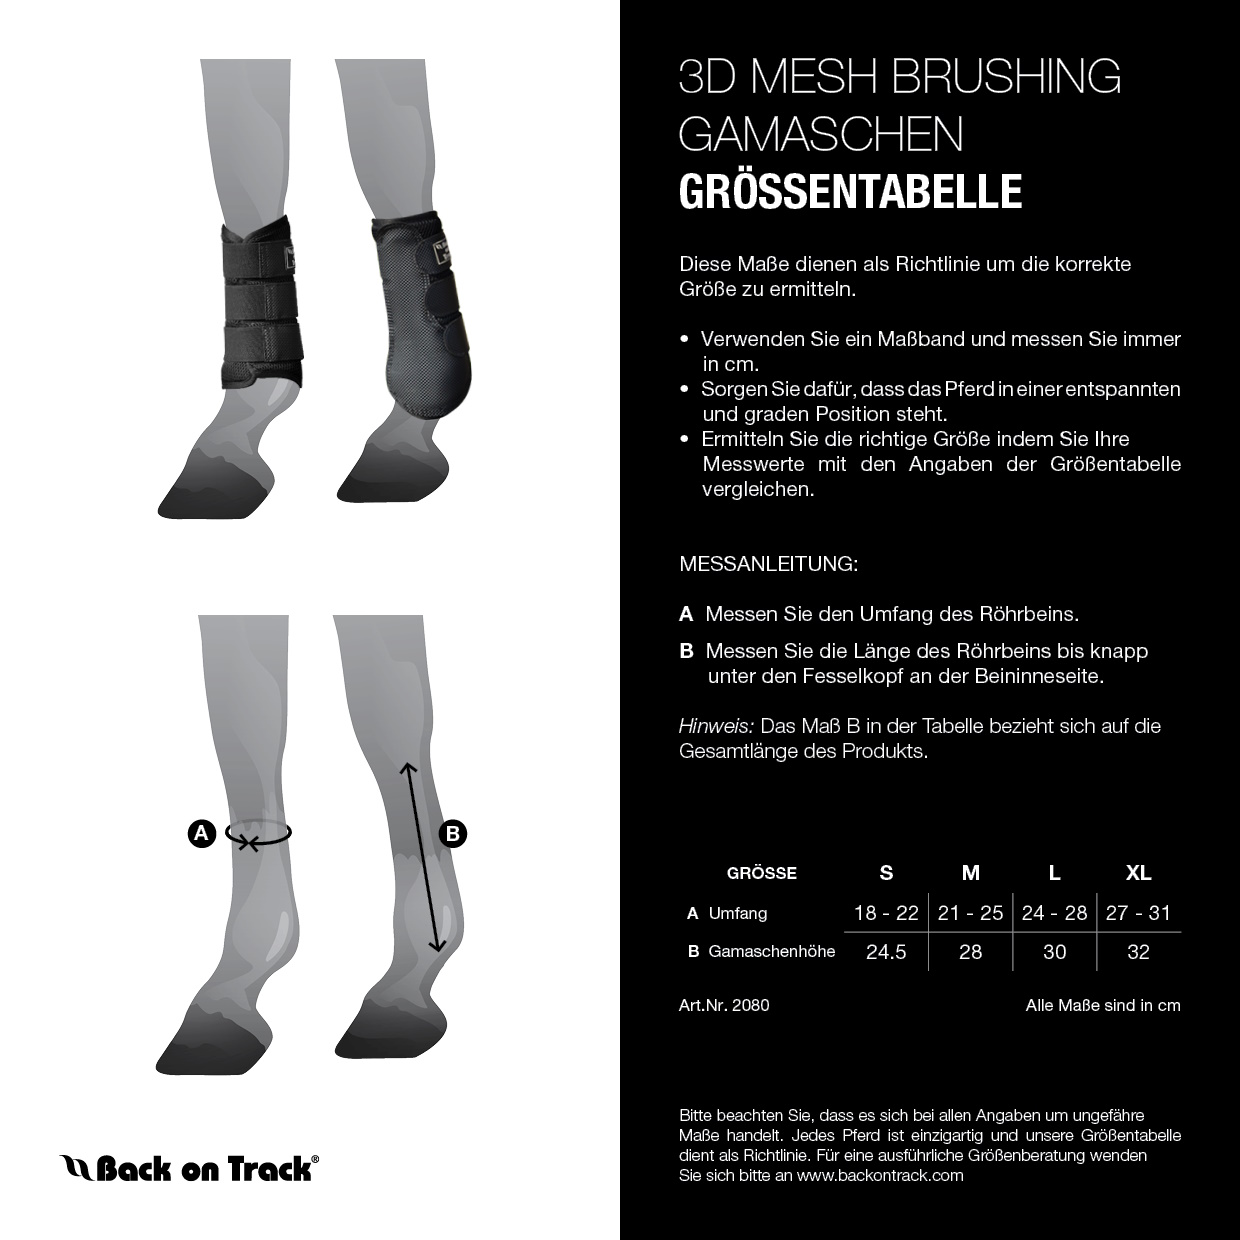 Back on Track Gamaschen 3D mesh Brushing mit Welltex Größe L - white - L - 6